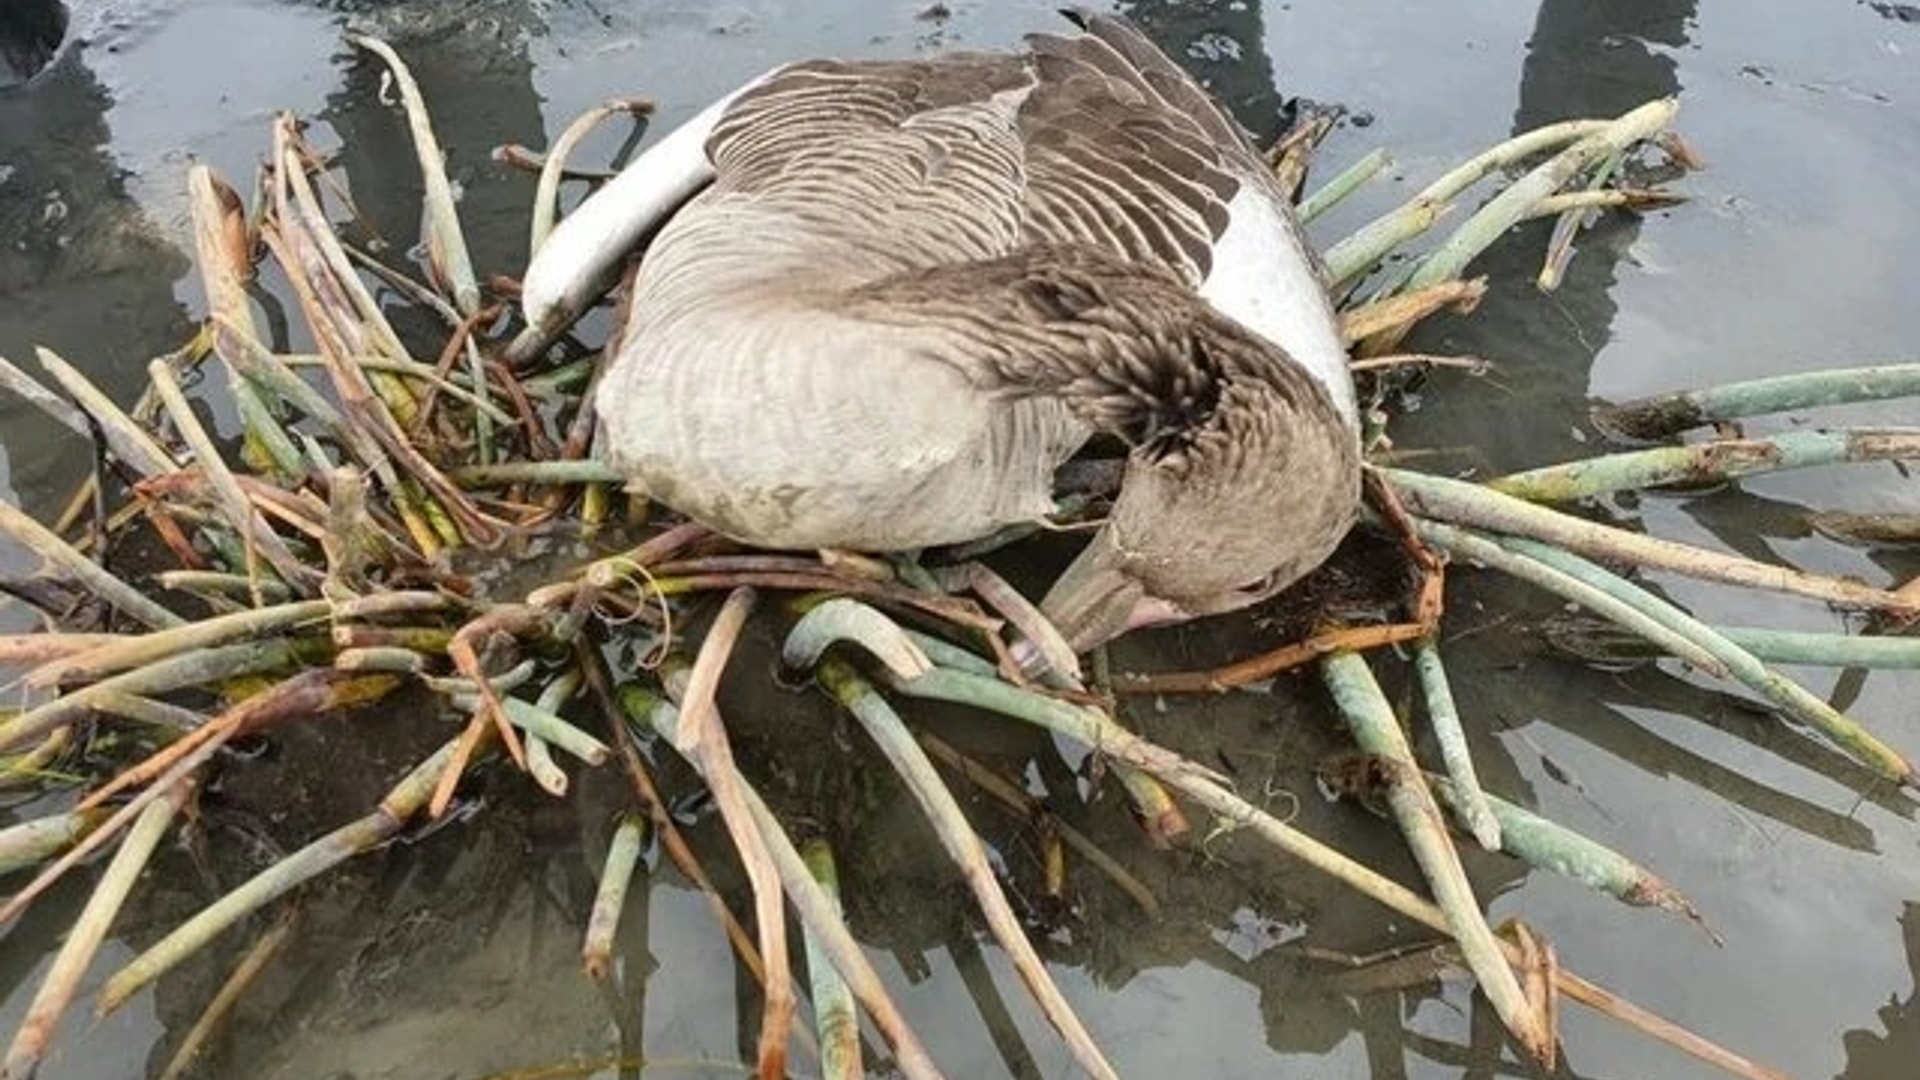 جمع آوری ۱۳۲۴ لاشه پرنده در تالاب میقان
تردد به محوطه تالاب میقان اراک ممنوع است